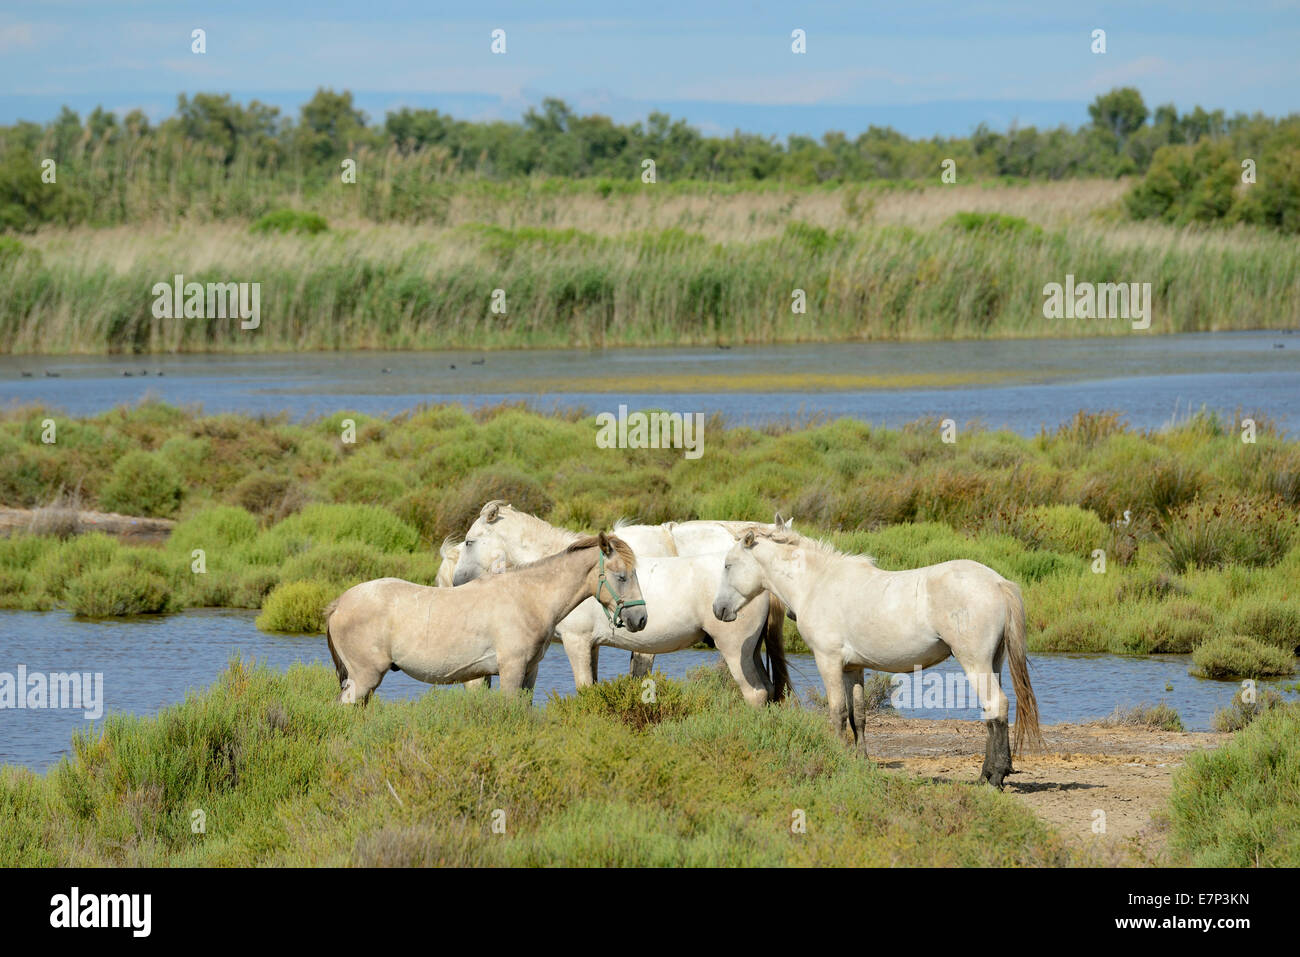 Europe, France, Languedoc- Roussillon, Camargue, horses, wetland, wildlife, animal, white horses Stock Photo